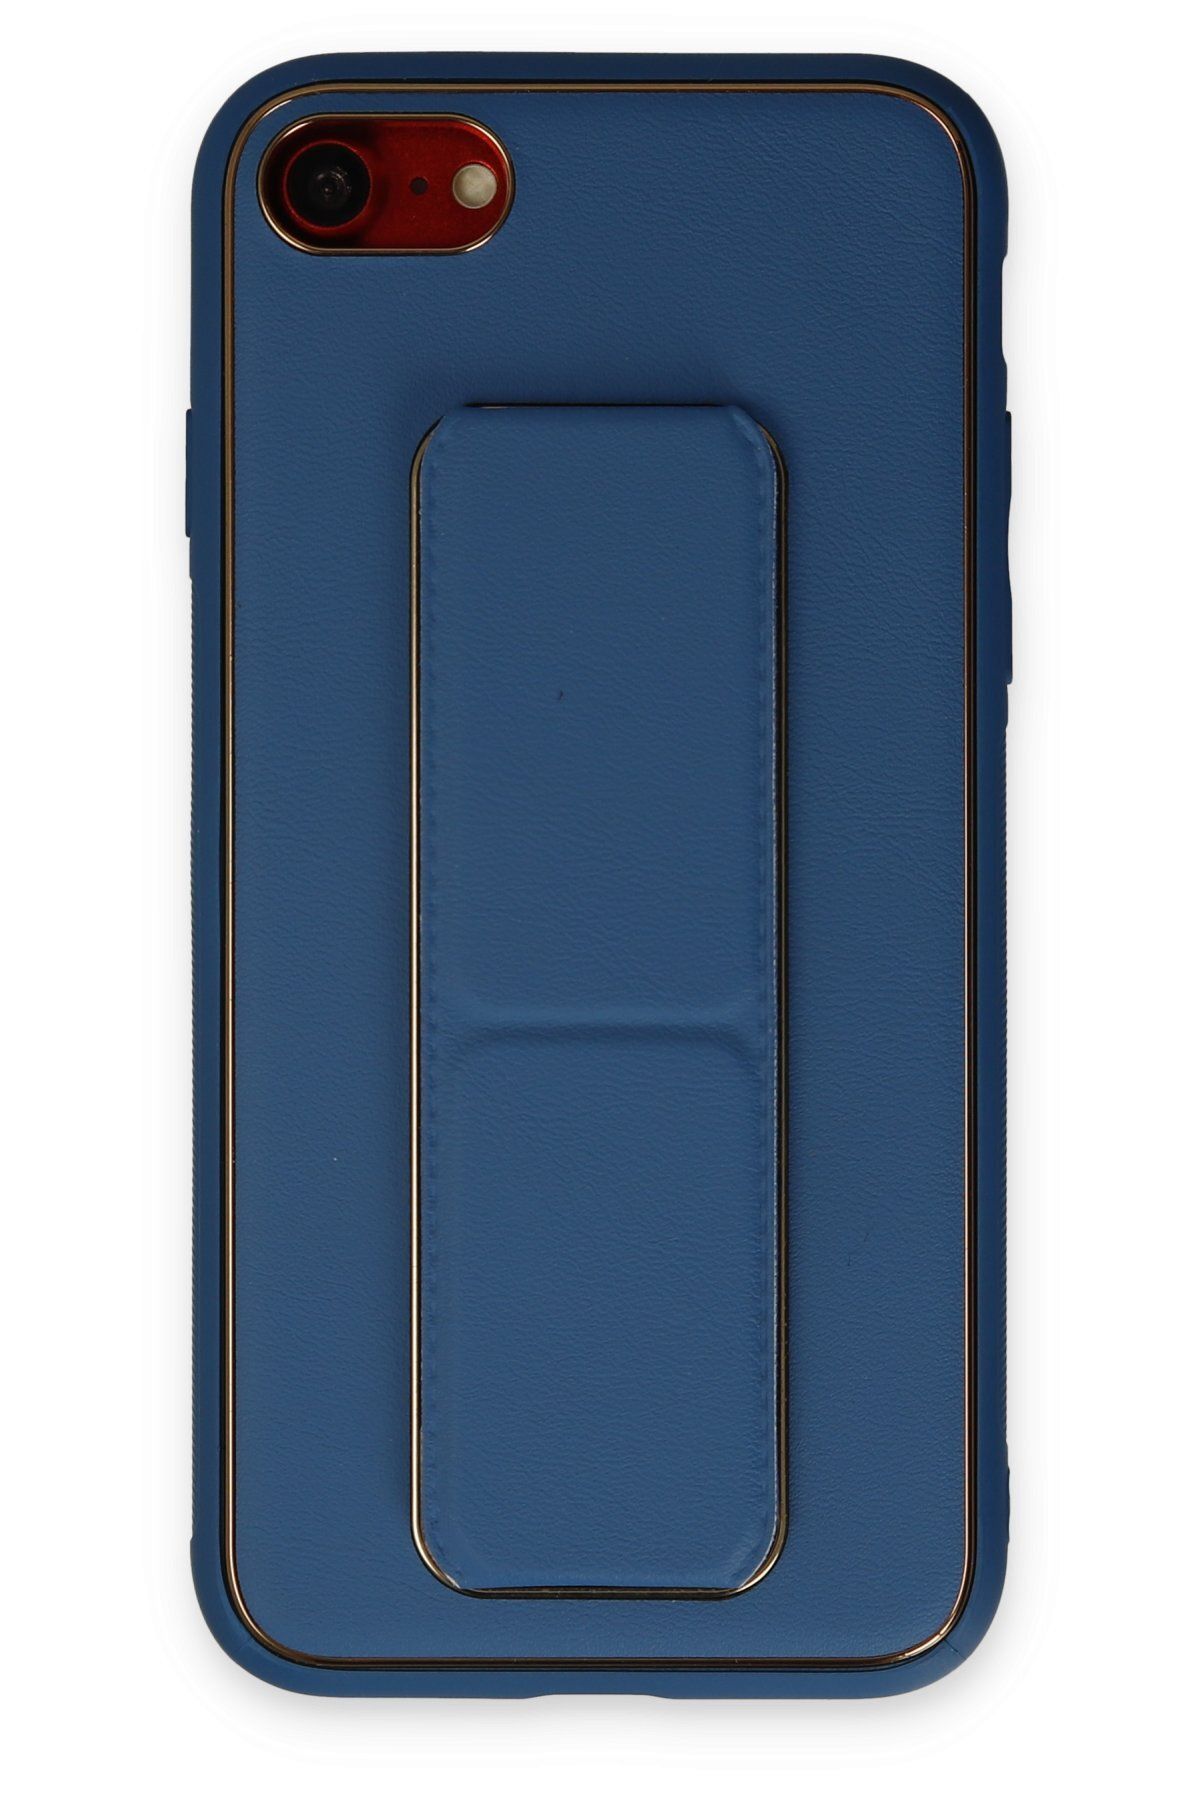 NewFace iPhone 7 Kılıf Coco Deri Standlı Kapak - Açık Mavi 374113